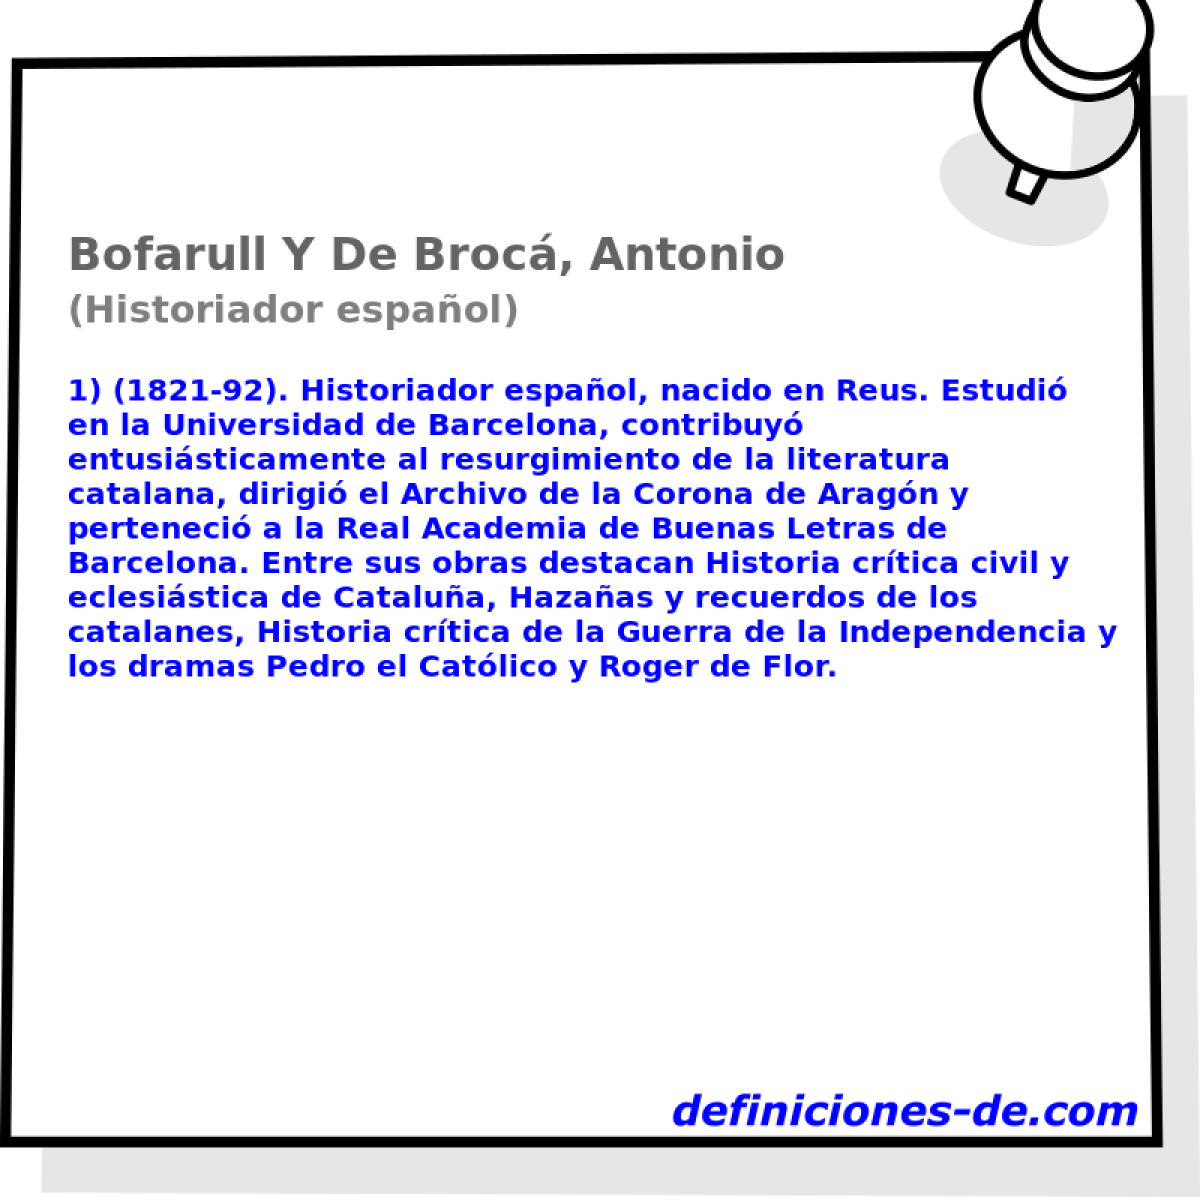 Bofarull Y De Broc, Antonio (Historiador espaol)